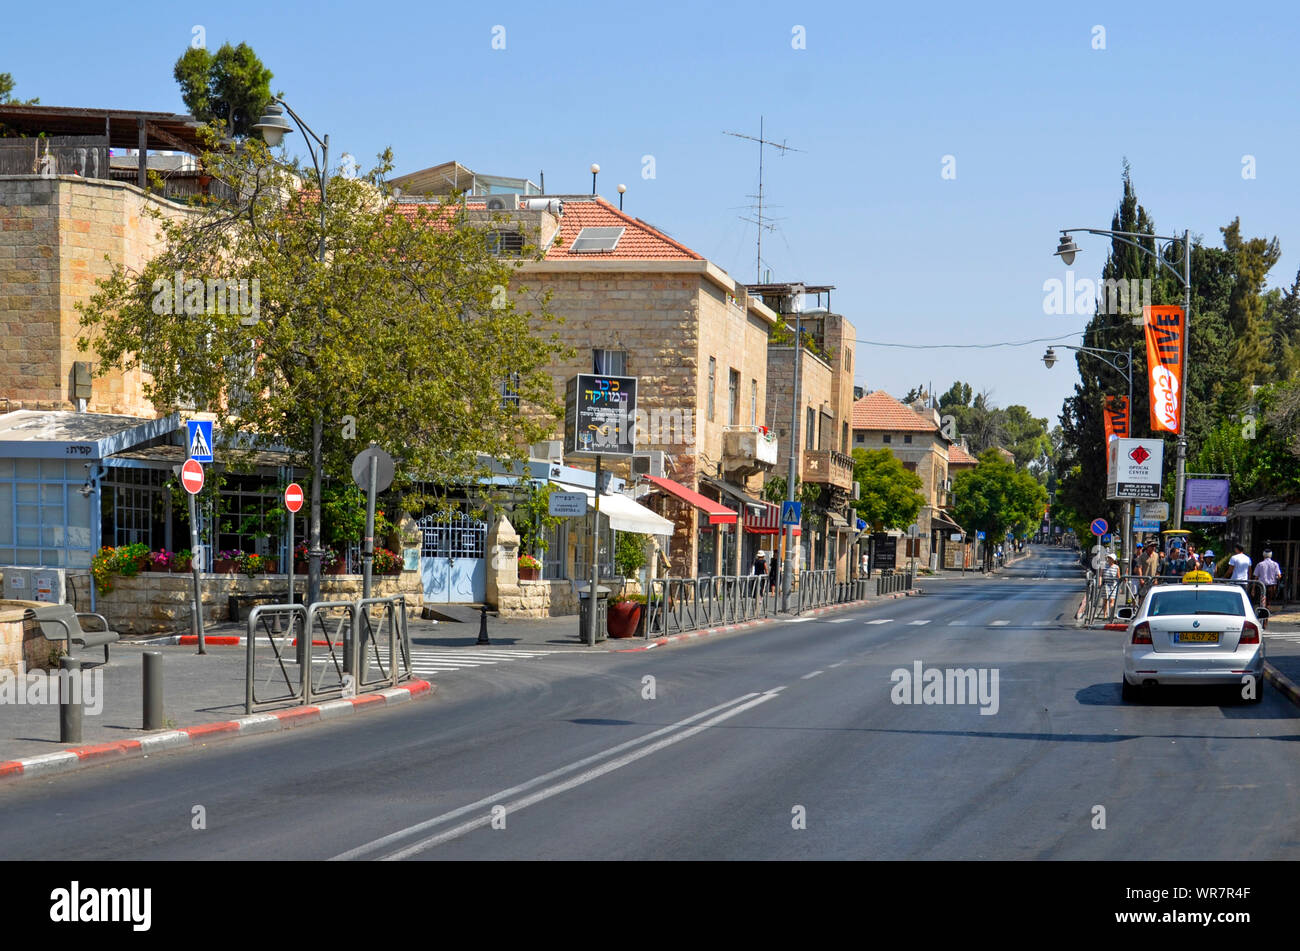 Emek Refaim Street, en el barrio de colonia alemana, al oeste de Jerusalén, Israel Foto de stock